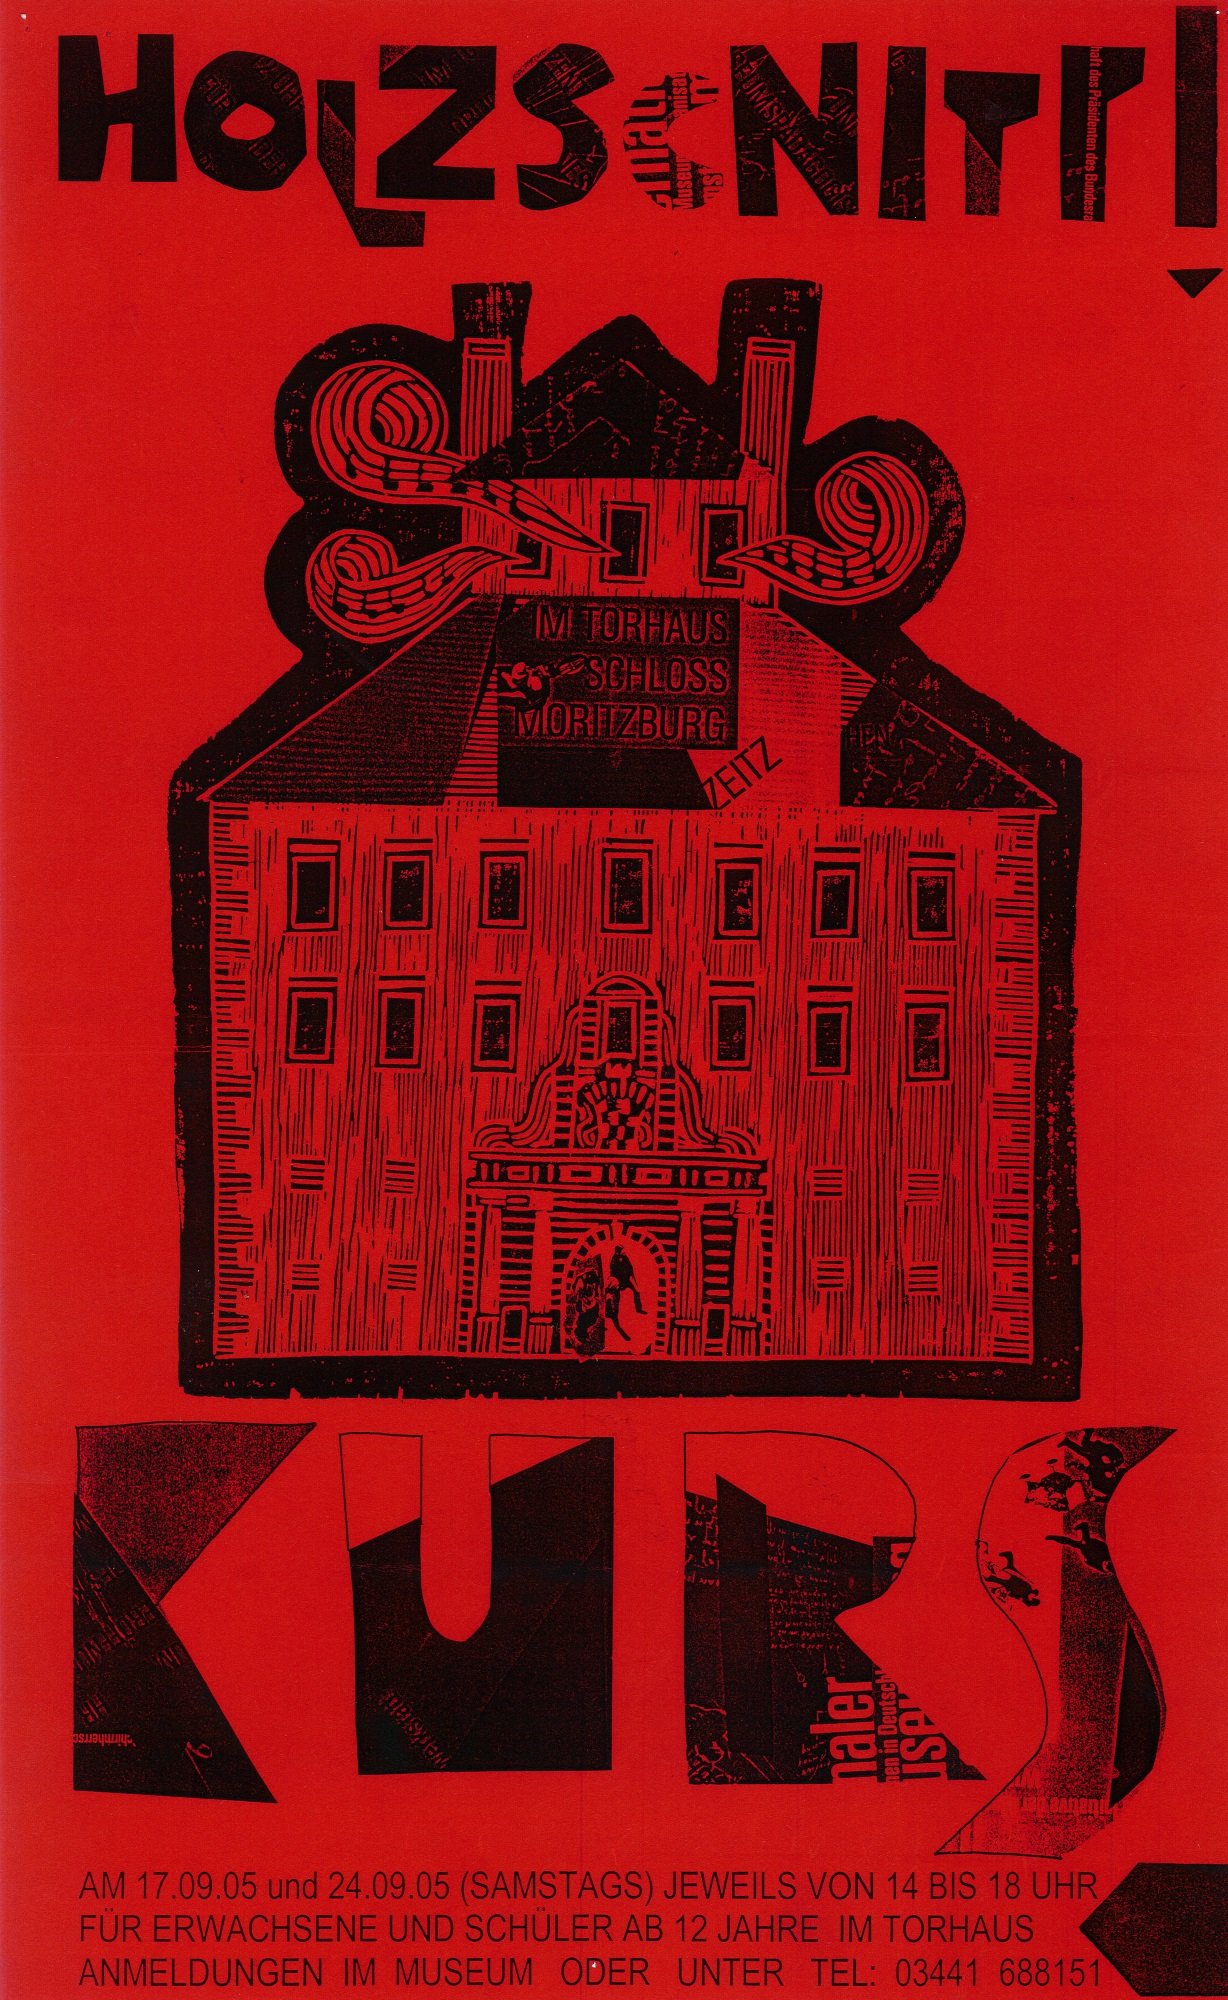 Plakat "Holzschnitt Kurs" (Museum Schloss Moritzburg Zeitz RR-R)